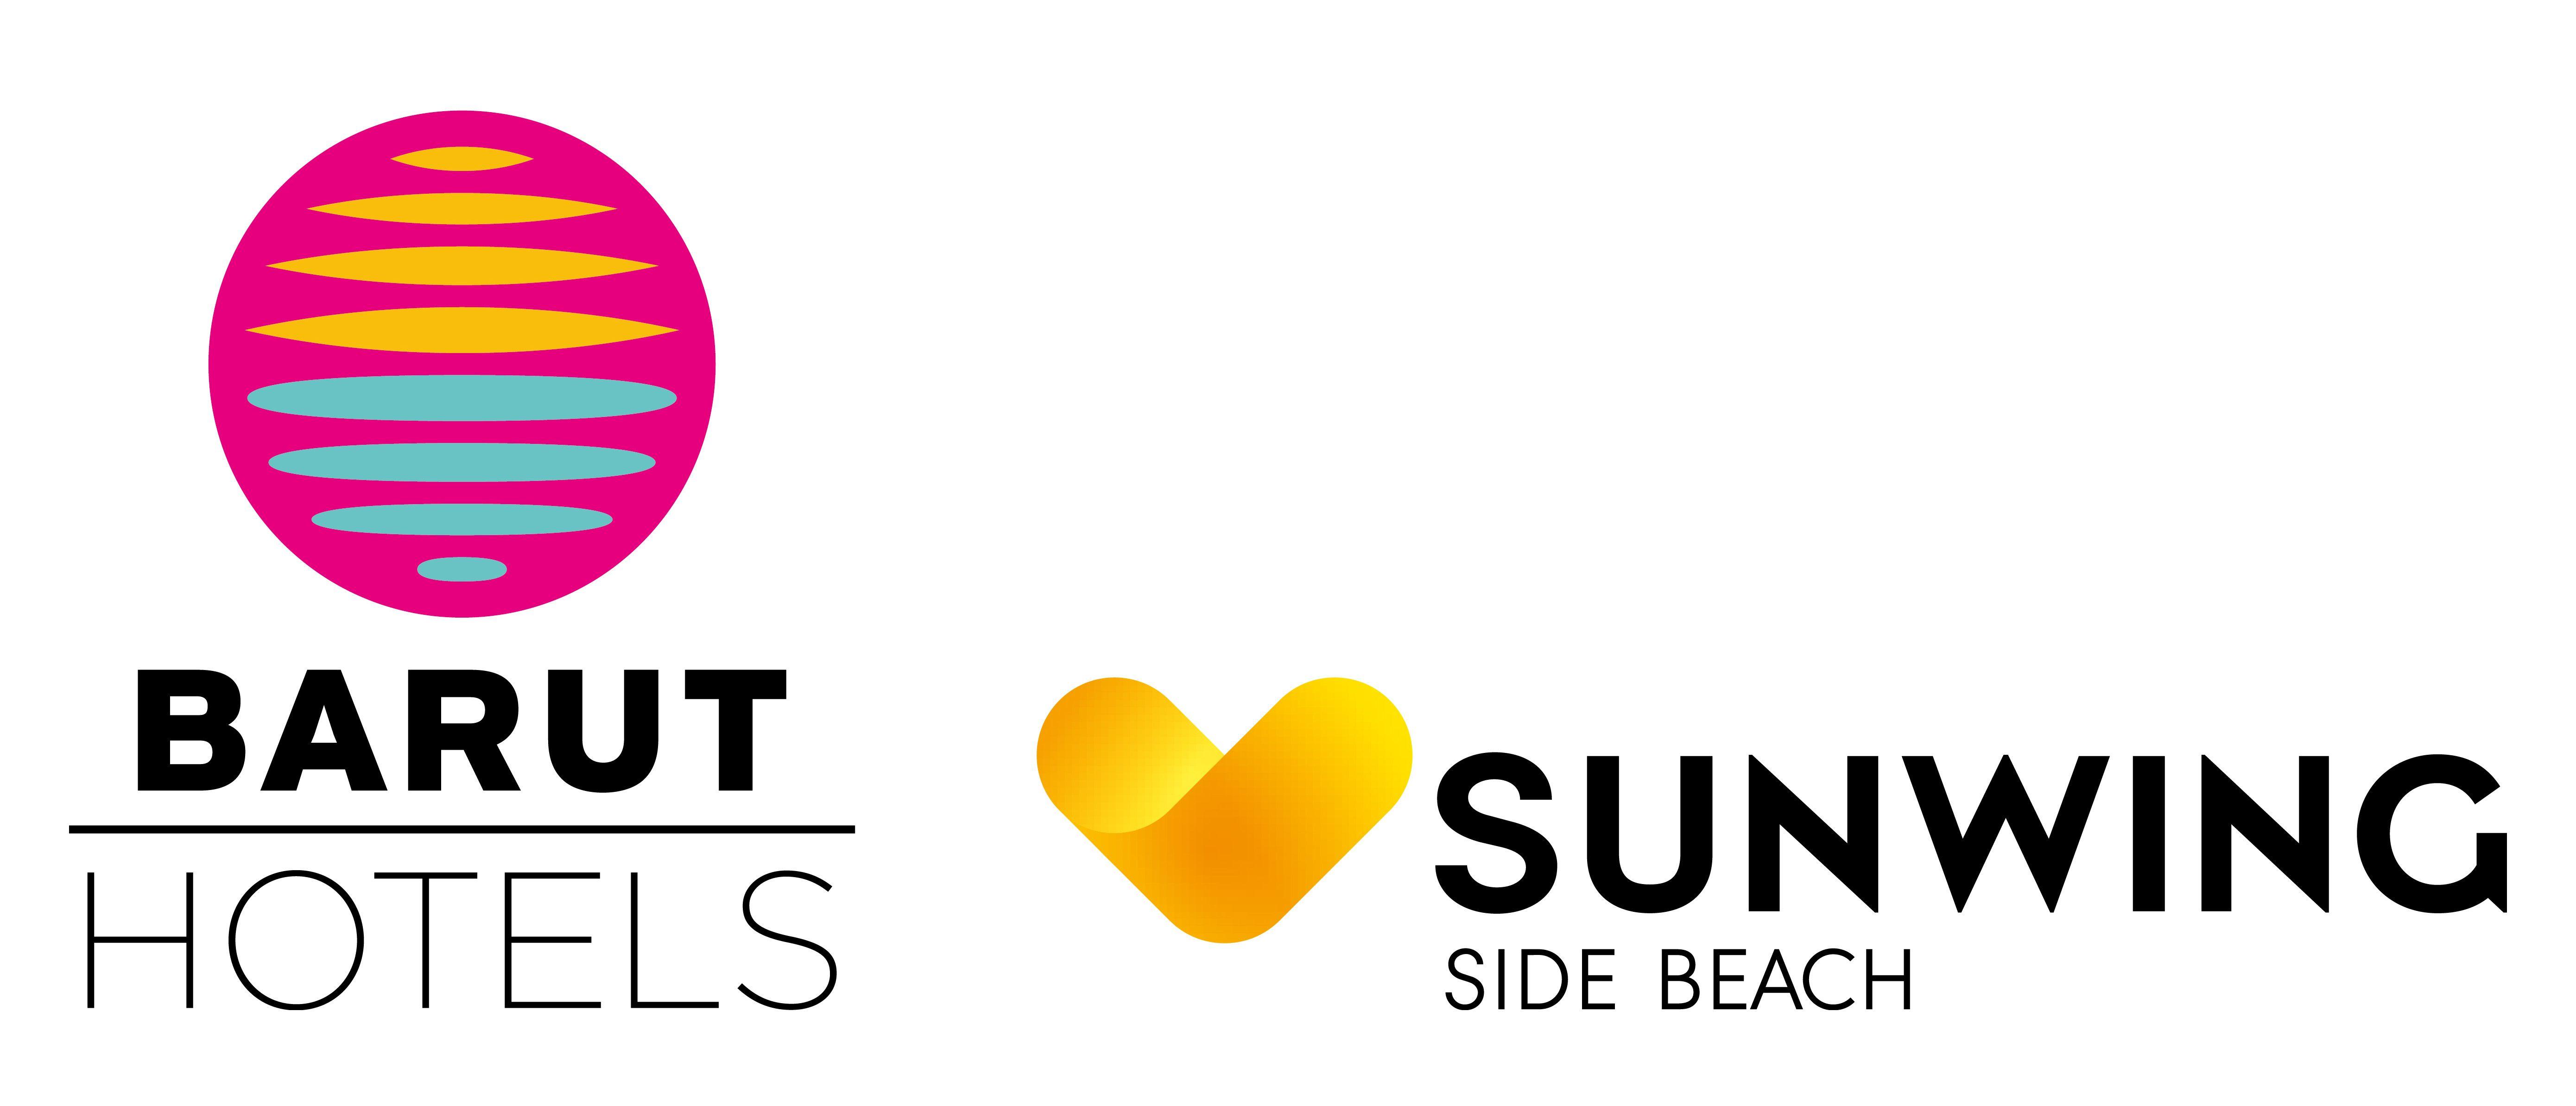 Sunwing Logo - Index Of BARUT GROUP HOTELS SUNWING SIDE BEACH LOGO